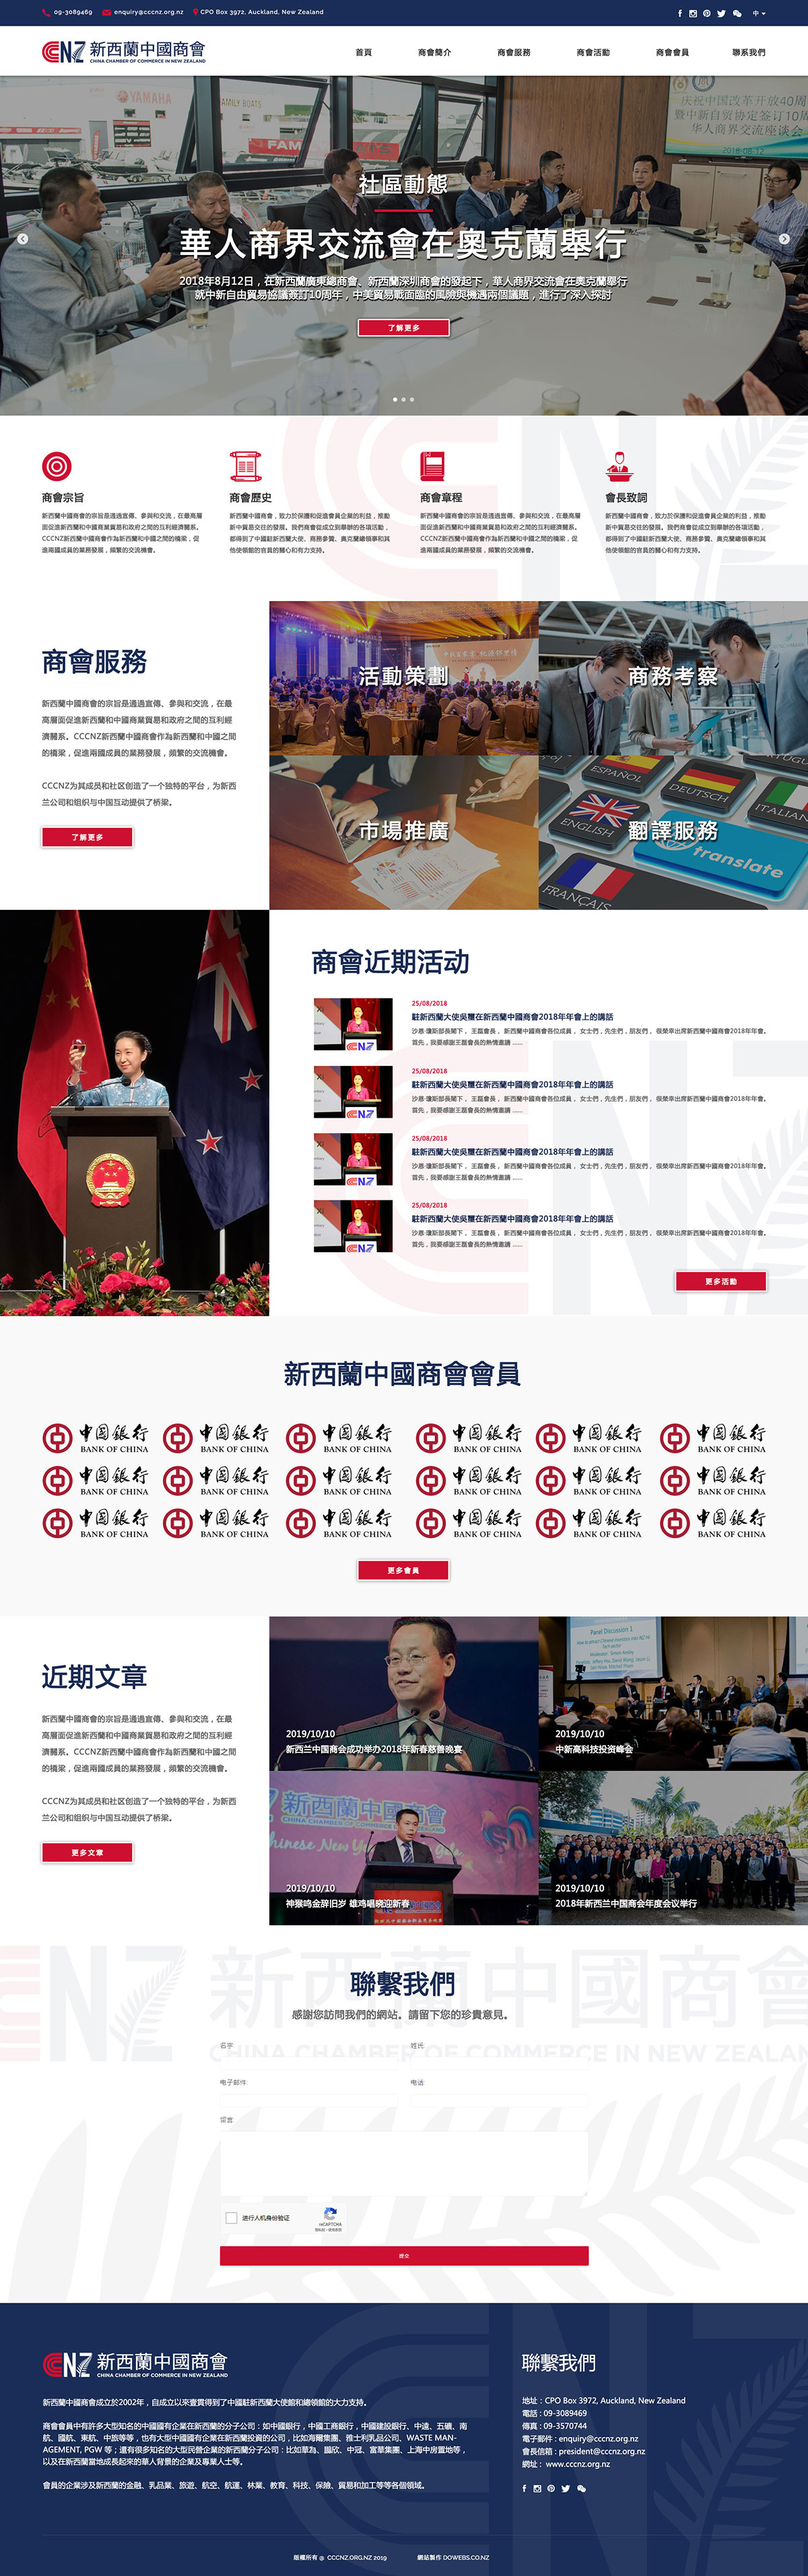 组织机构类网站案例-新西兰中国商会